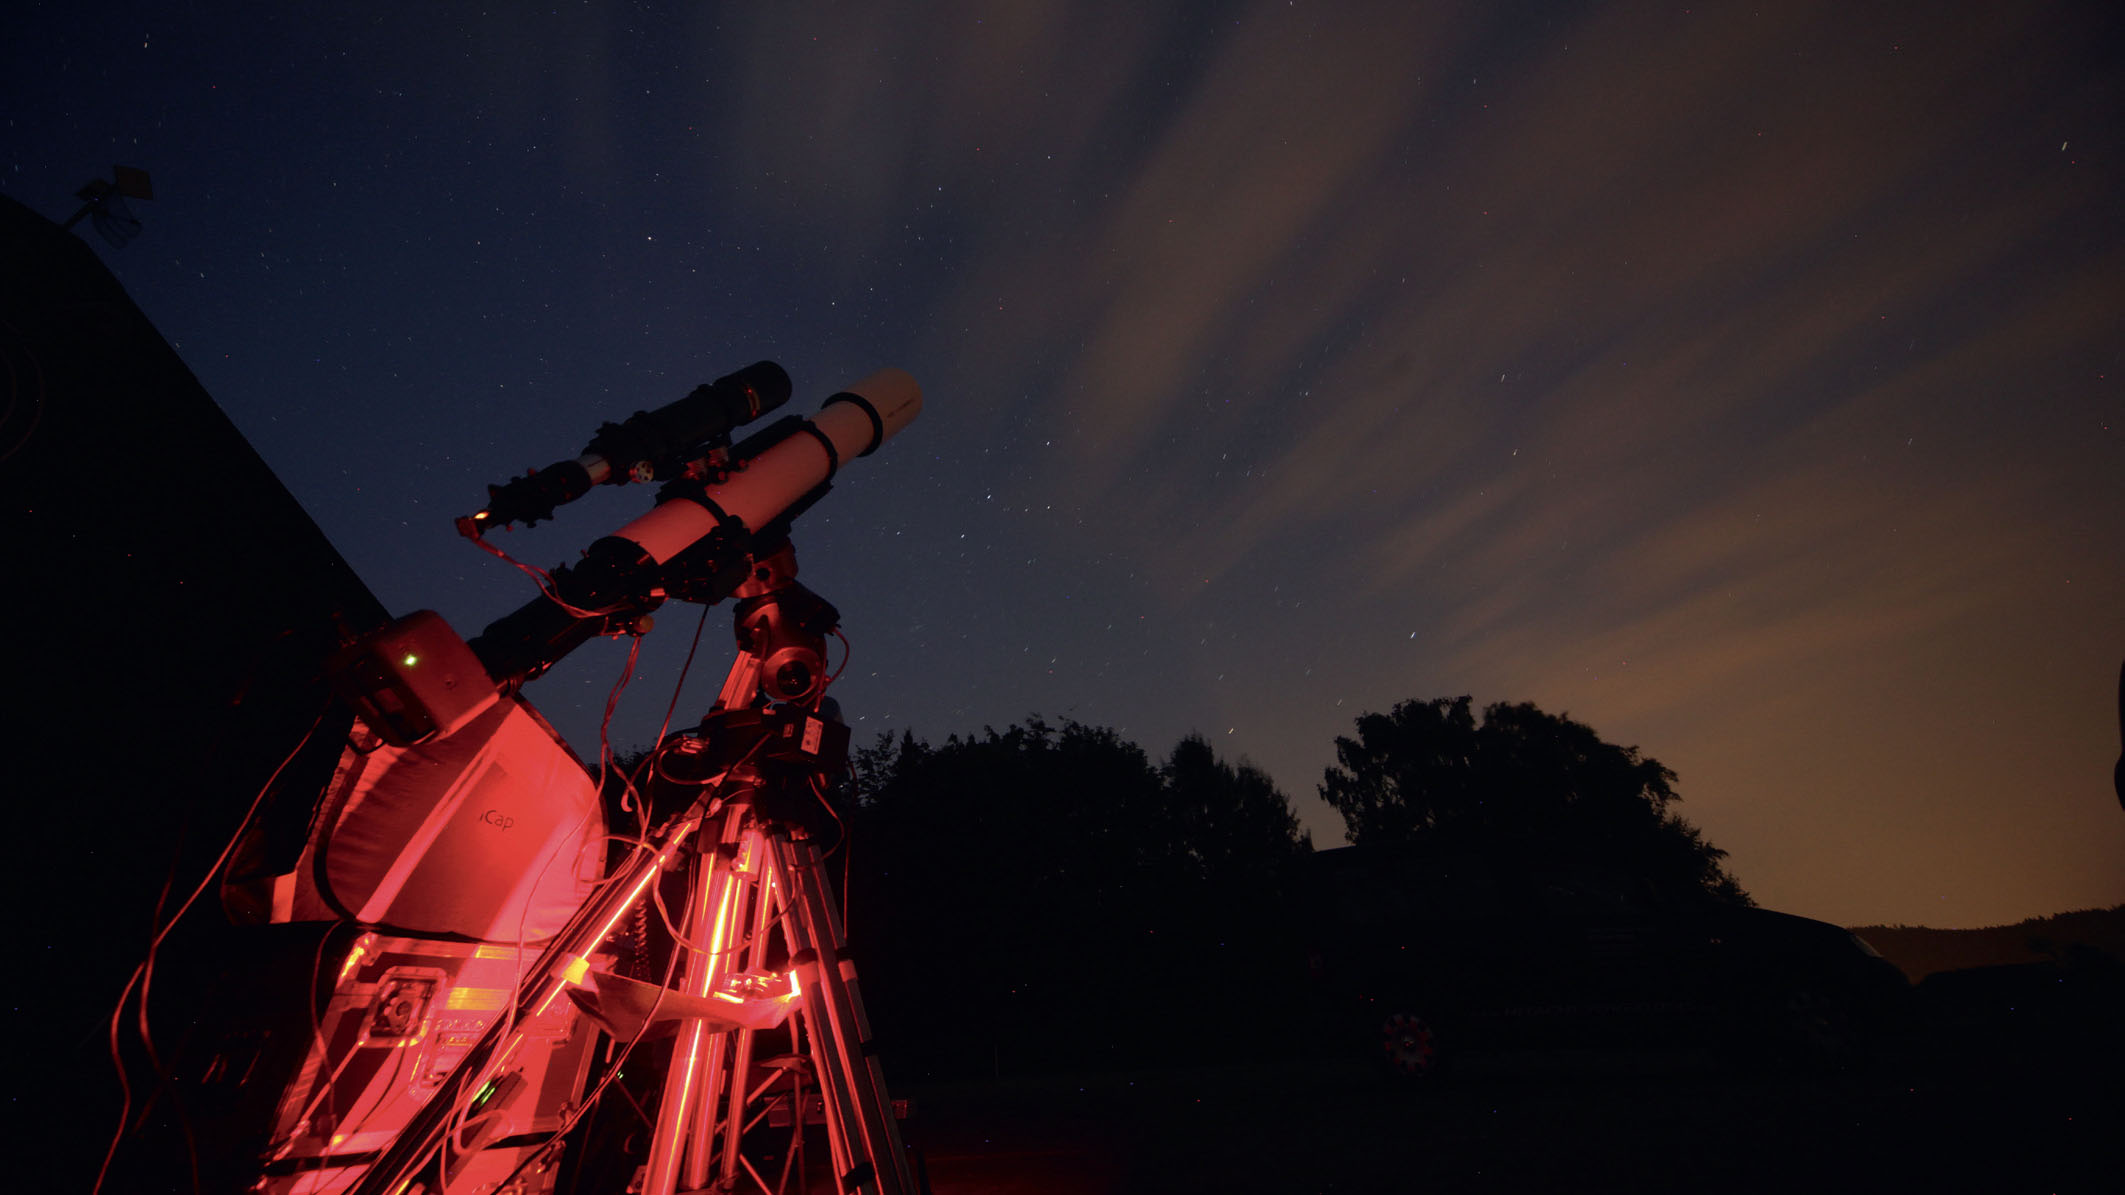 Pewnie ku długim ekspozycjom: teleskop z wyposażeniem do autoguidingu w akcji. Mario Weigand